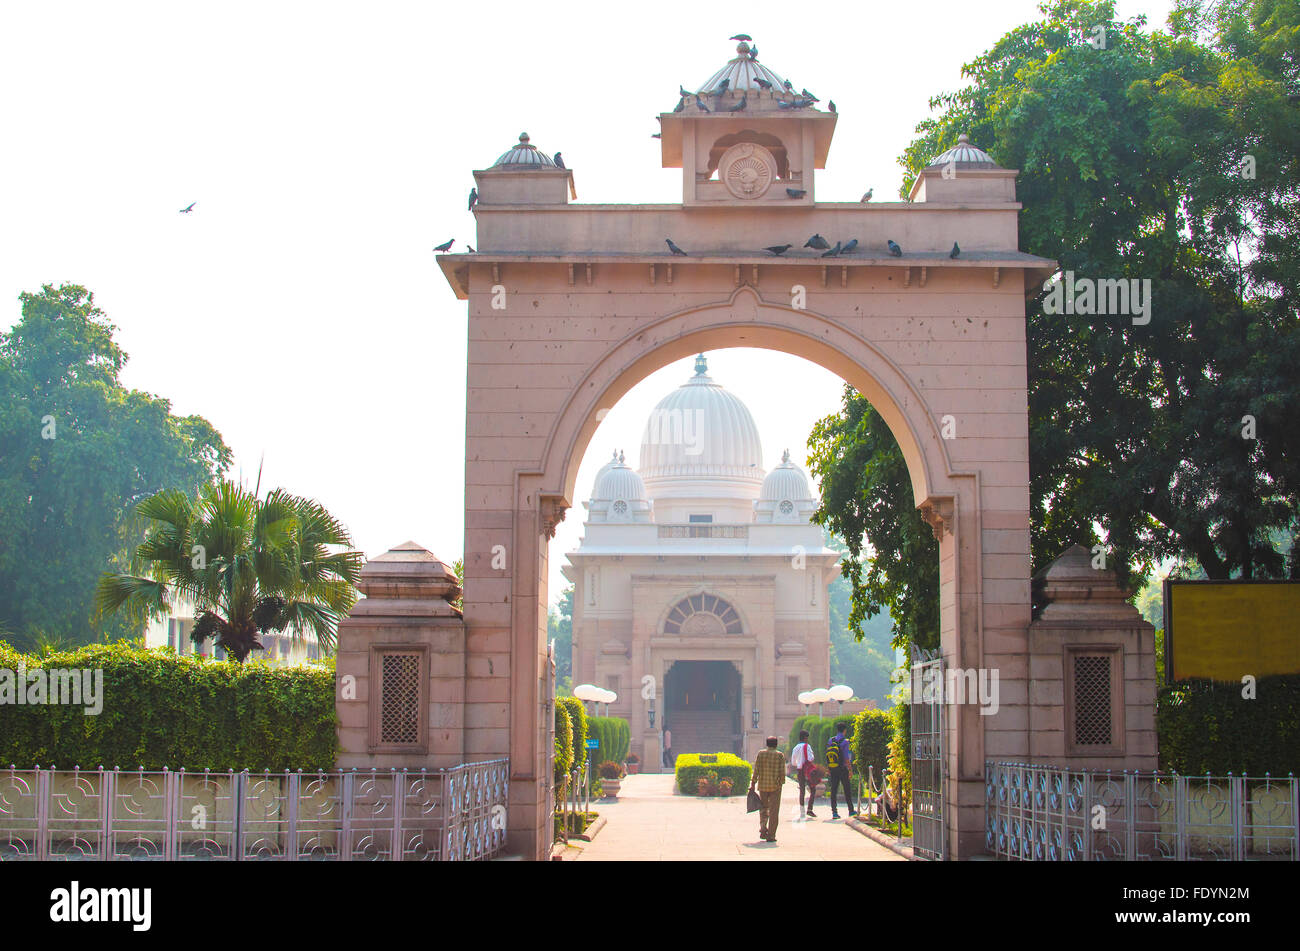 Bogen Sie einen Eingang zum Tempel in Old Delhi Indien, einen Bogen, Architektur, Gebäude, Sehenswürdigkeiten, die Stadt, Delhi, ein Eingang, religion Stockfoto